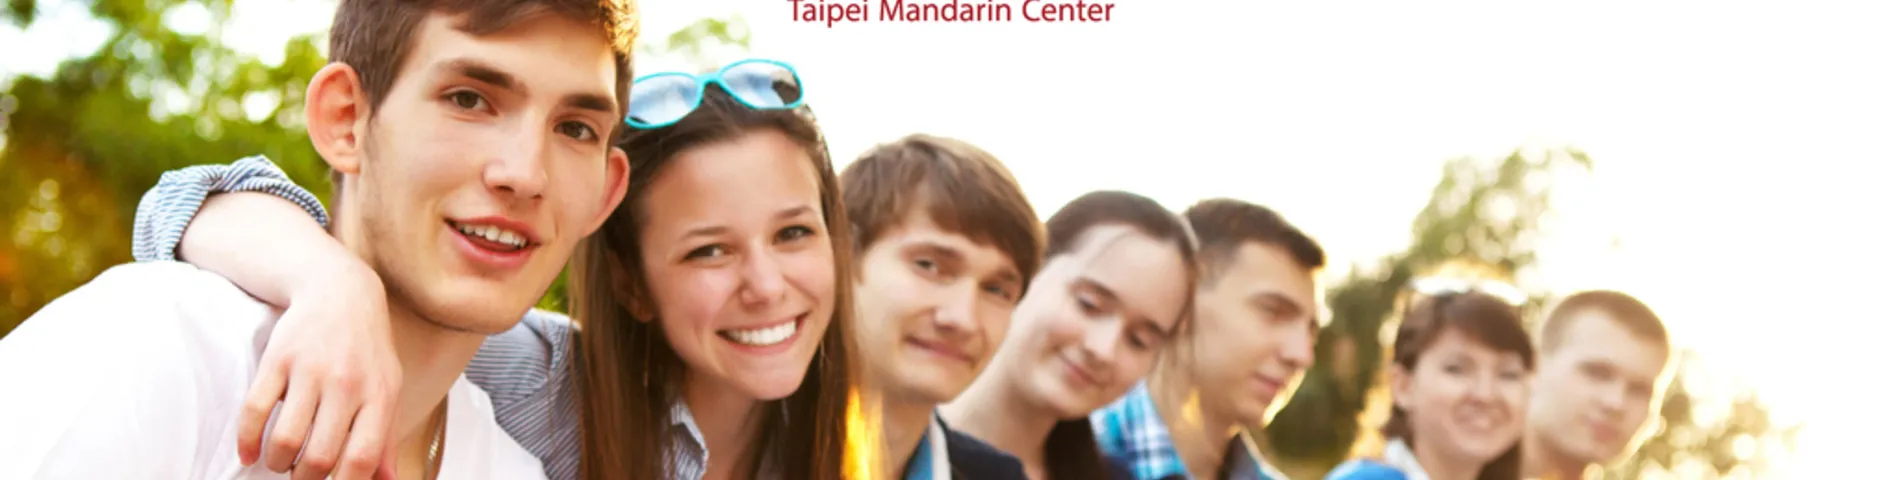 TMC - Taipei Mandarin Center resim 1